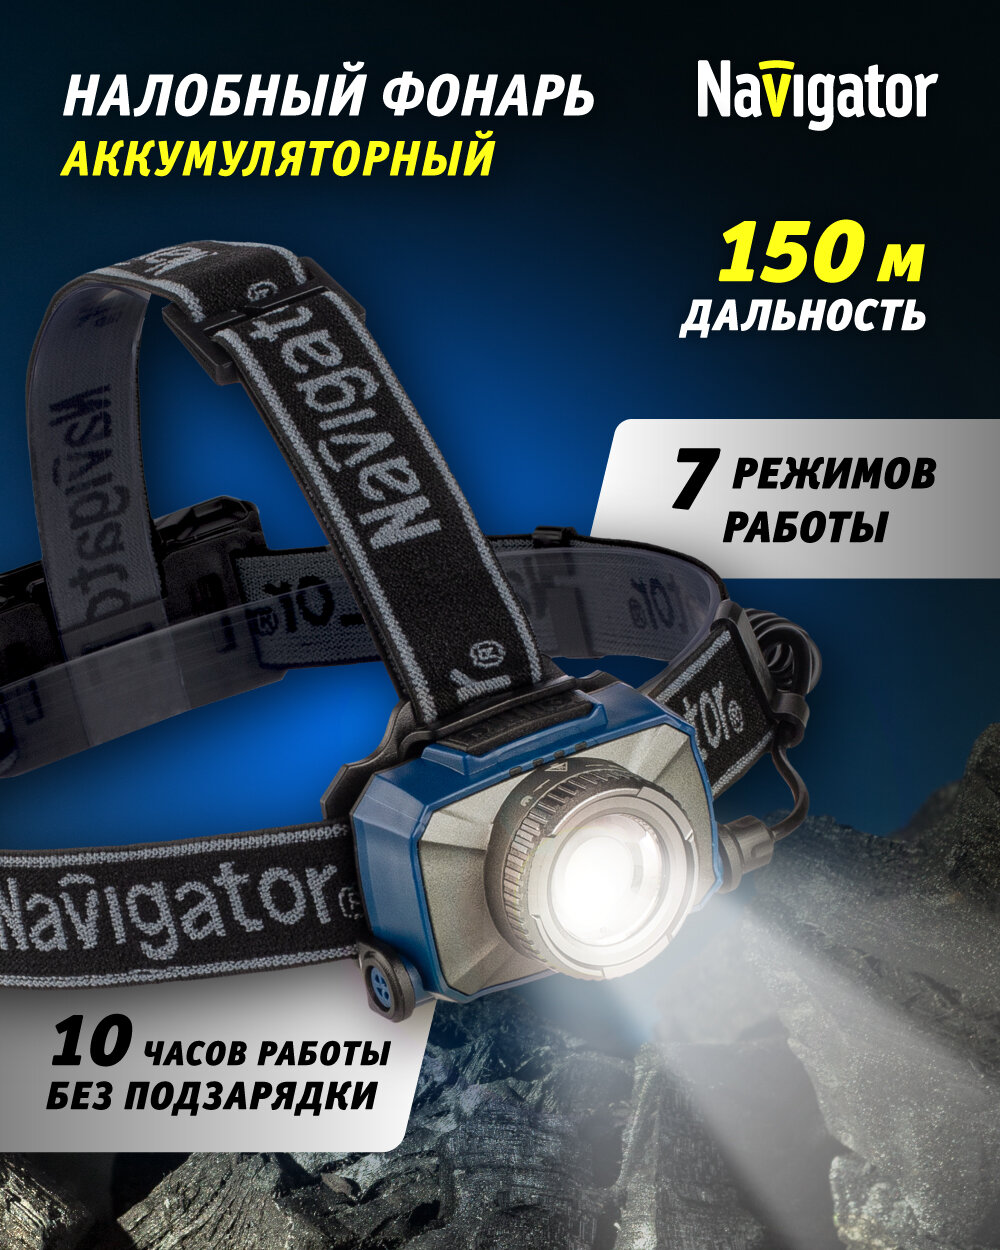 Фонарь налобный Navigator 14 238, 7 резимов работы, аккум. Li-ion 2000 мА/ч